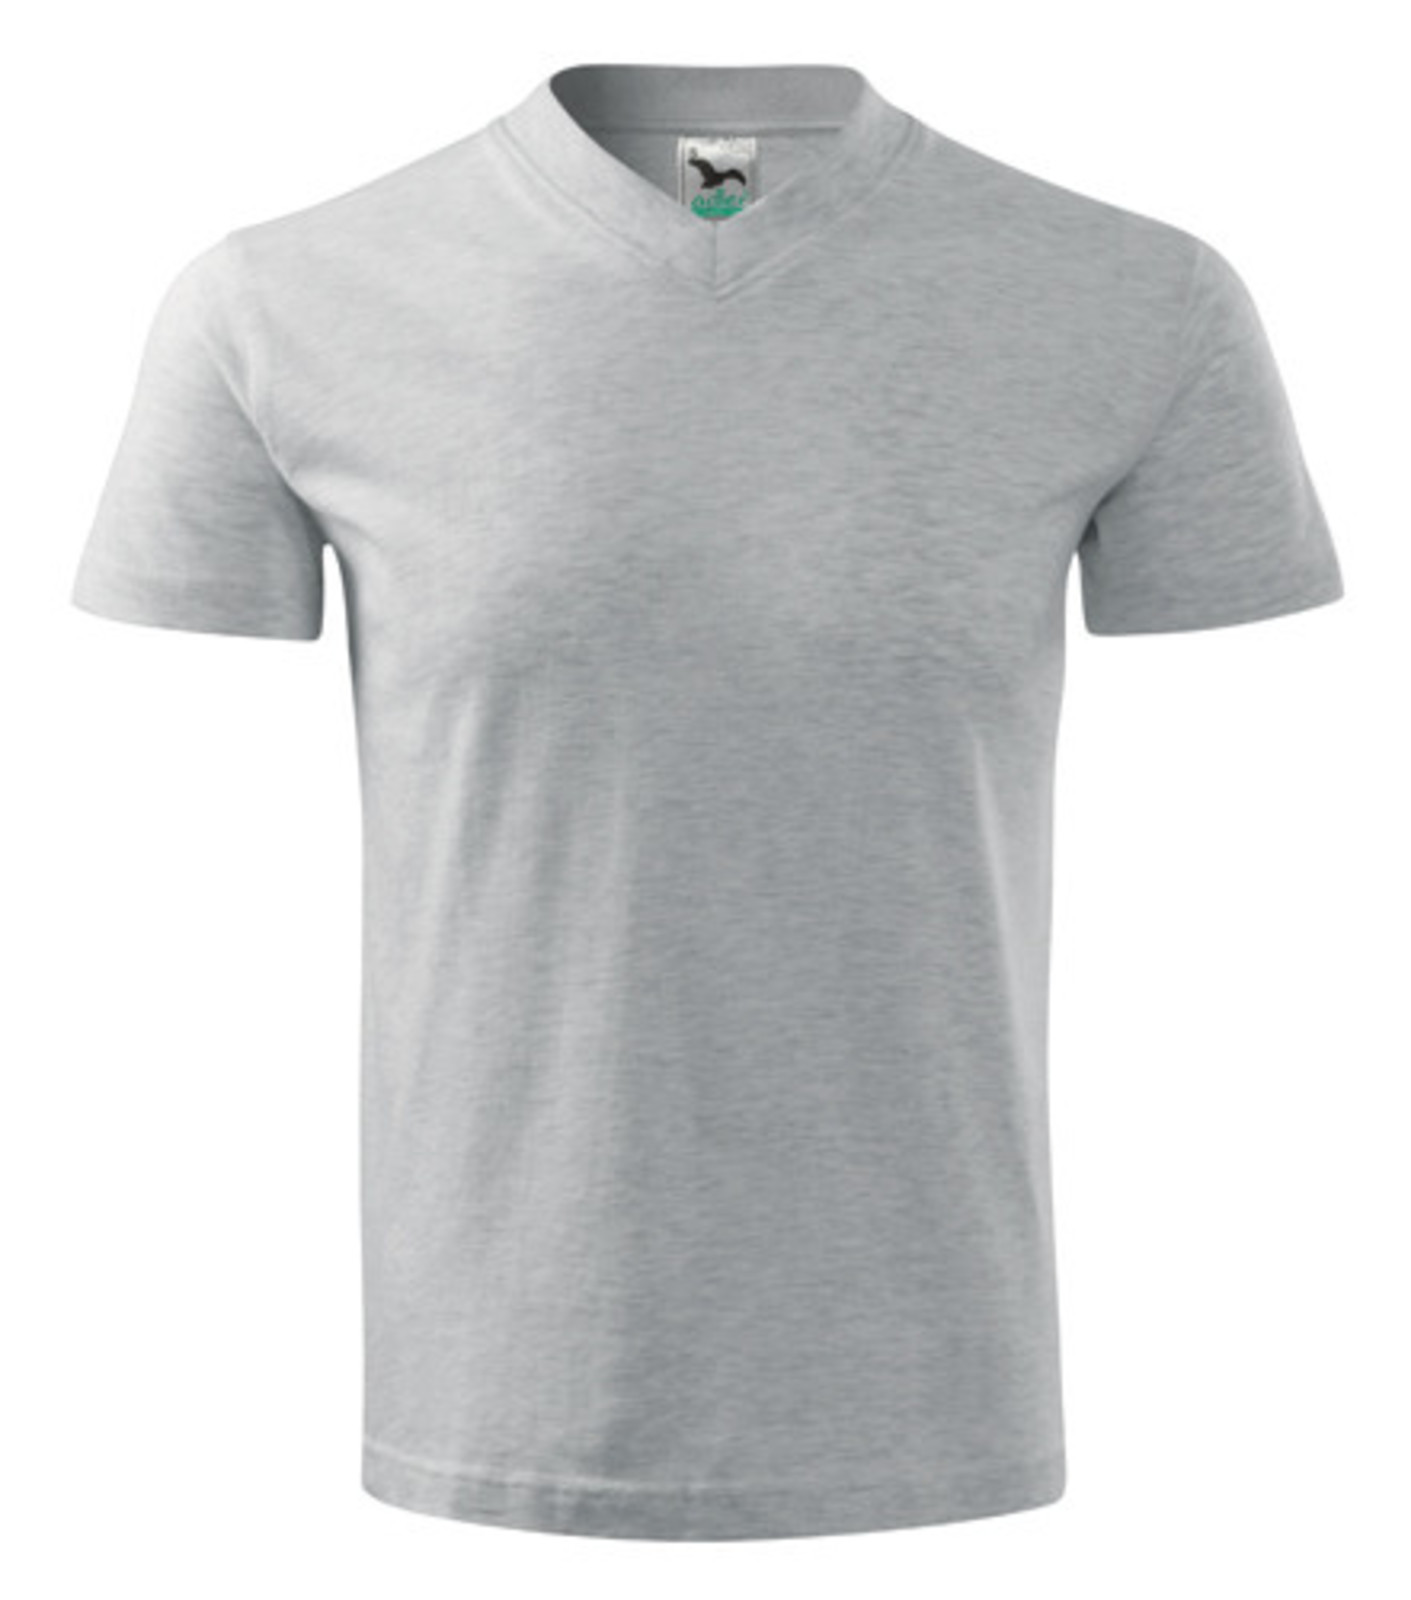 Unisex tričko s výstrihom Adler V-Neck 102 - veľkosť: L, farba: svetlosivý melír